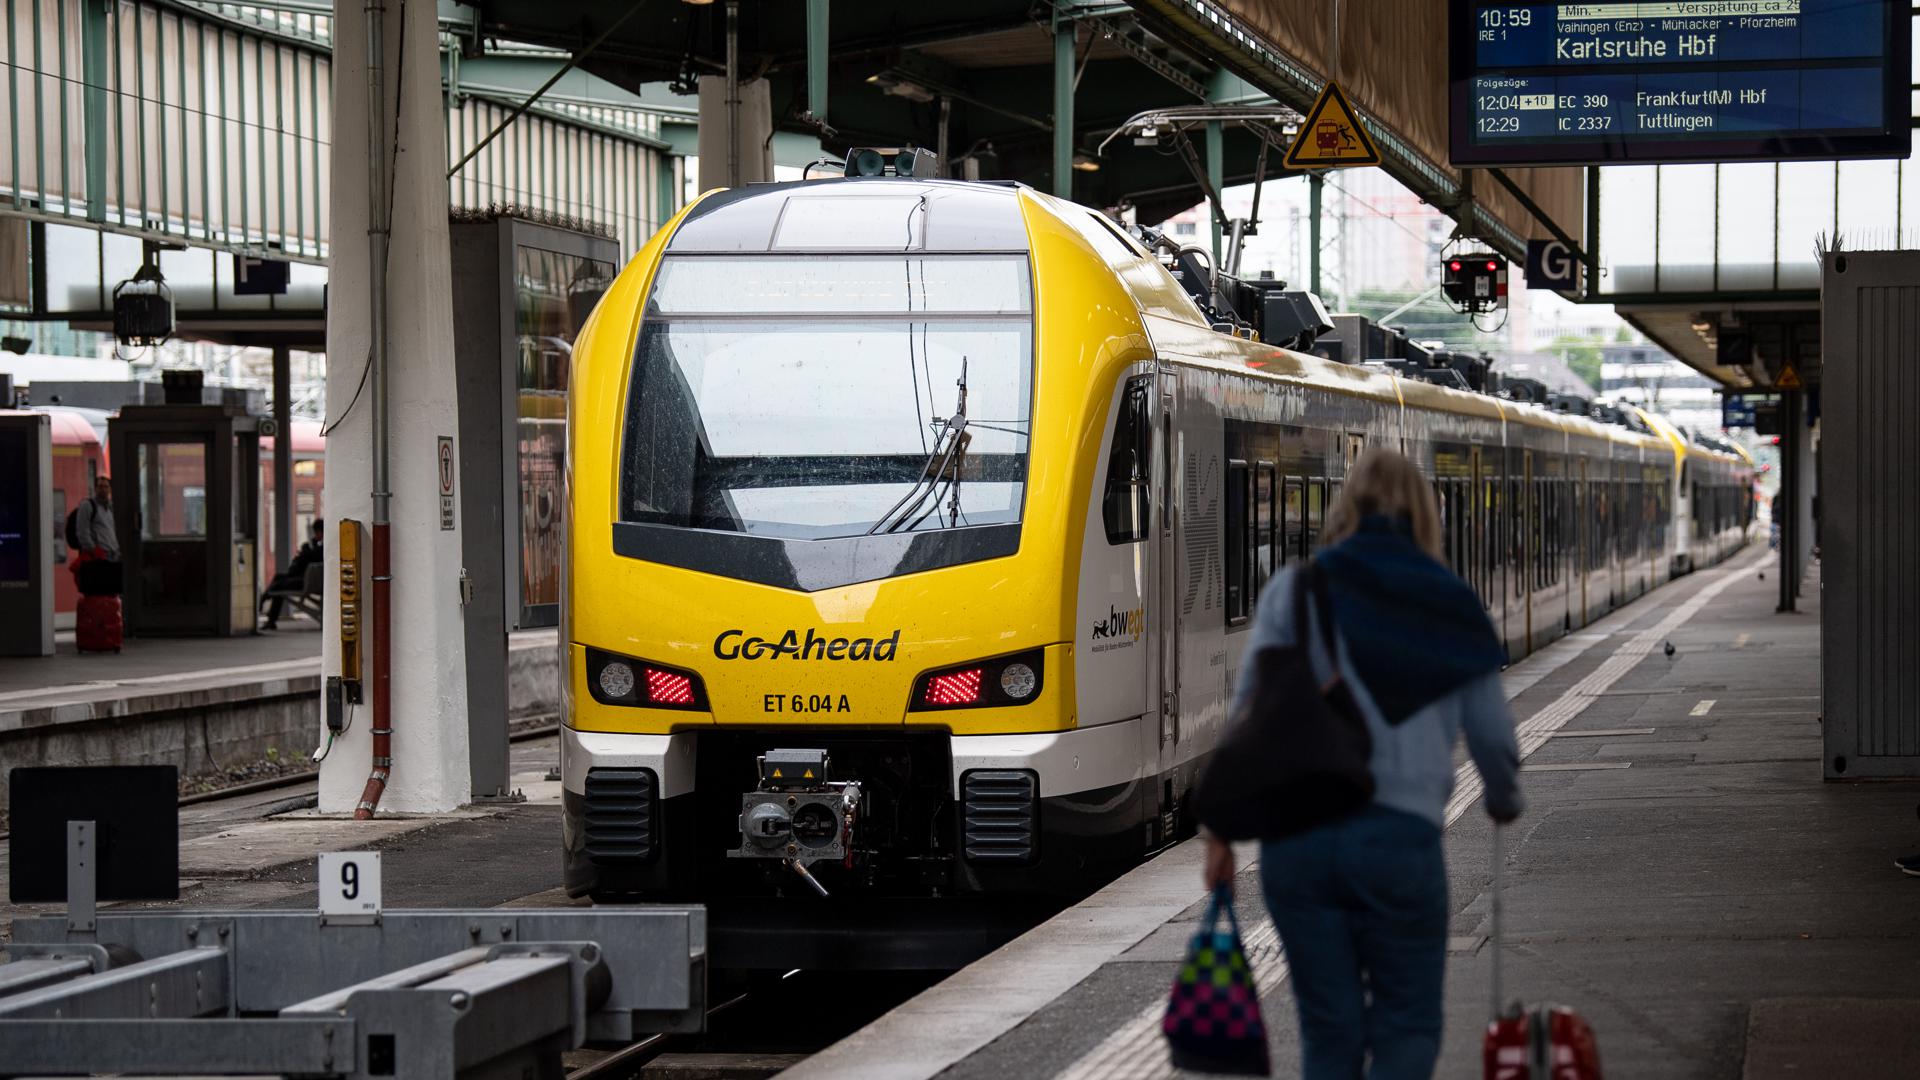 Ein Zug des Typs FLIRT des Zugbetreibers Go-Ahead steht am Stuttgarter Hauptbahnhof. Beim neuen Betreiber der Remsbahn «Go Ahead» gibt es seit dem frühen Dienstagmorgen erhebliche Probleme und Verspätungen. +++ dpa-Bildfunk +++